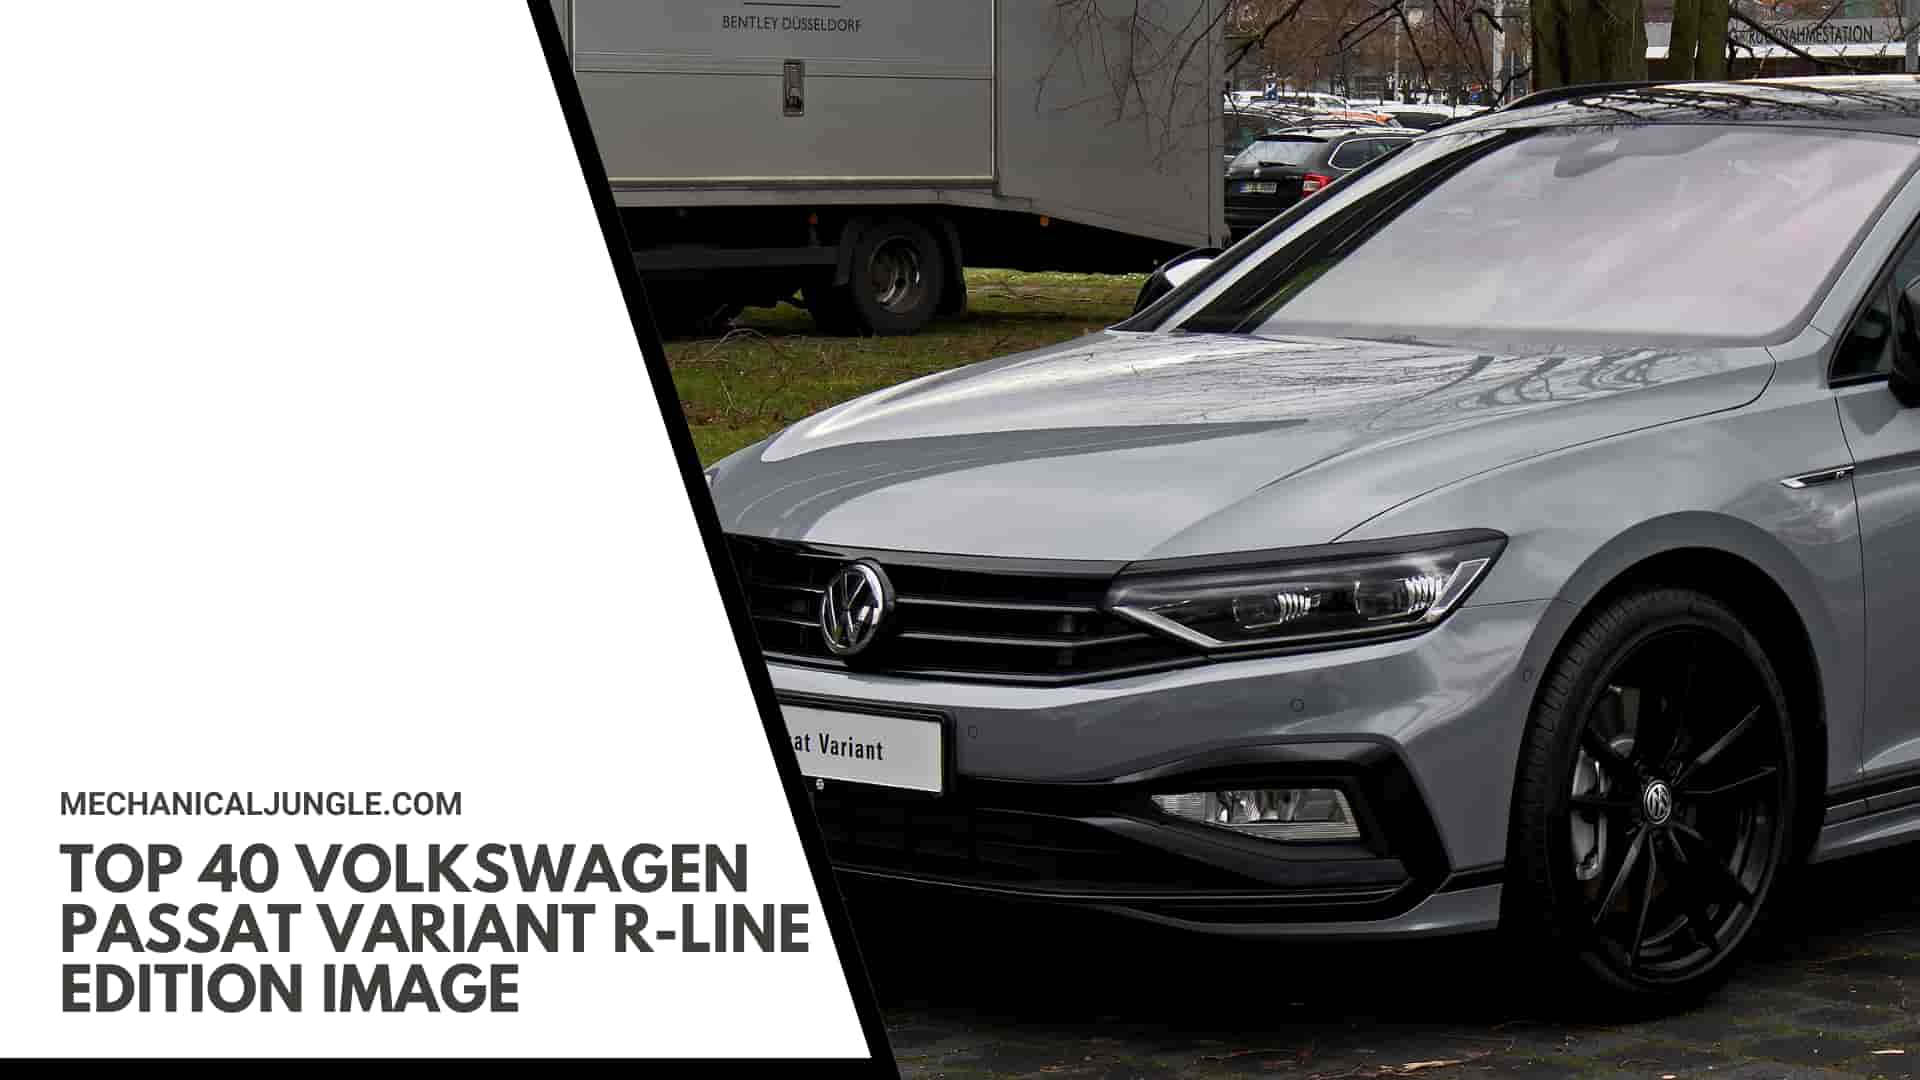 Top 40 Volkswagen Passat Variant R-Line Edition Image